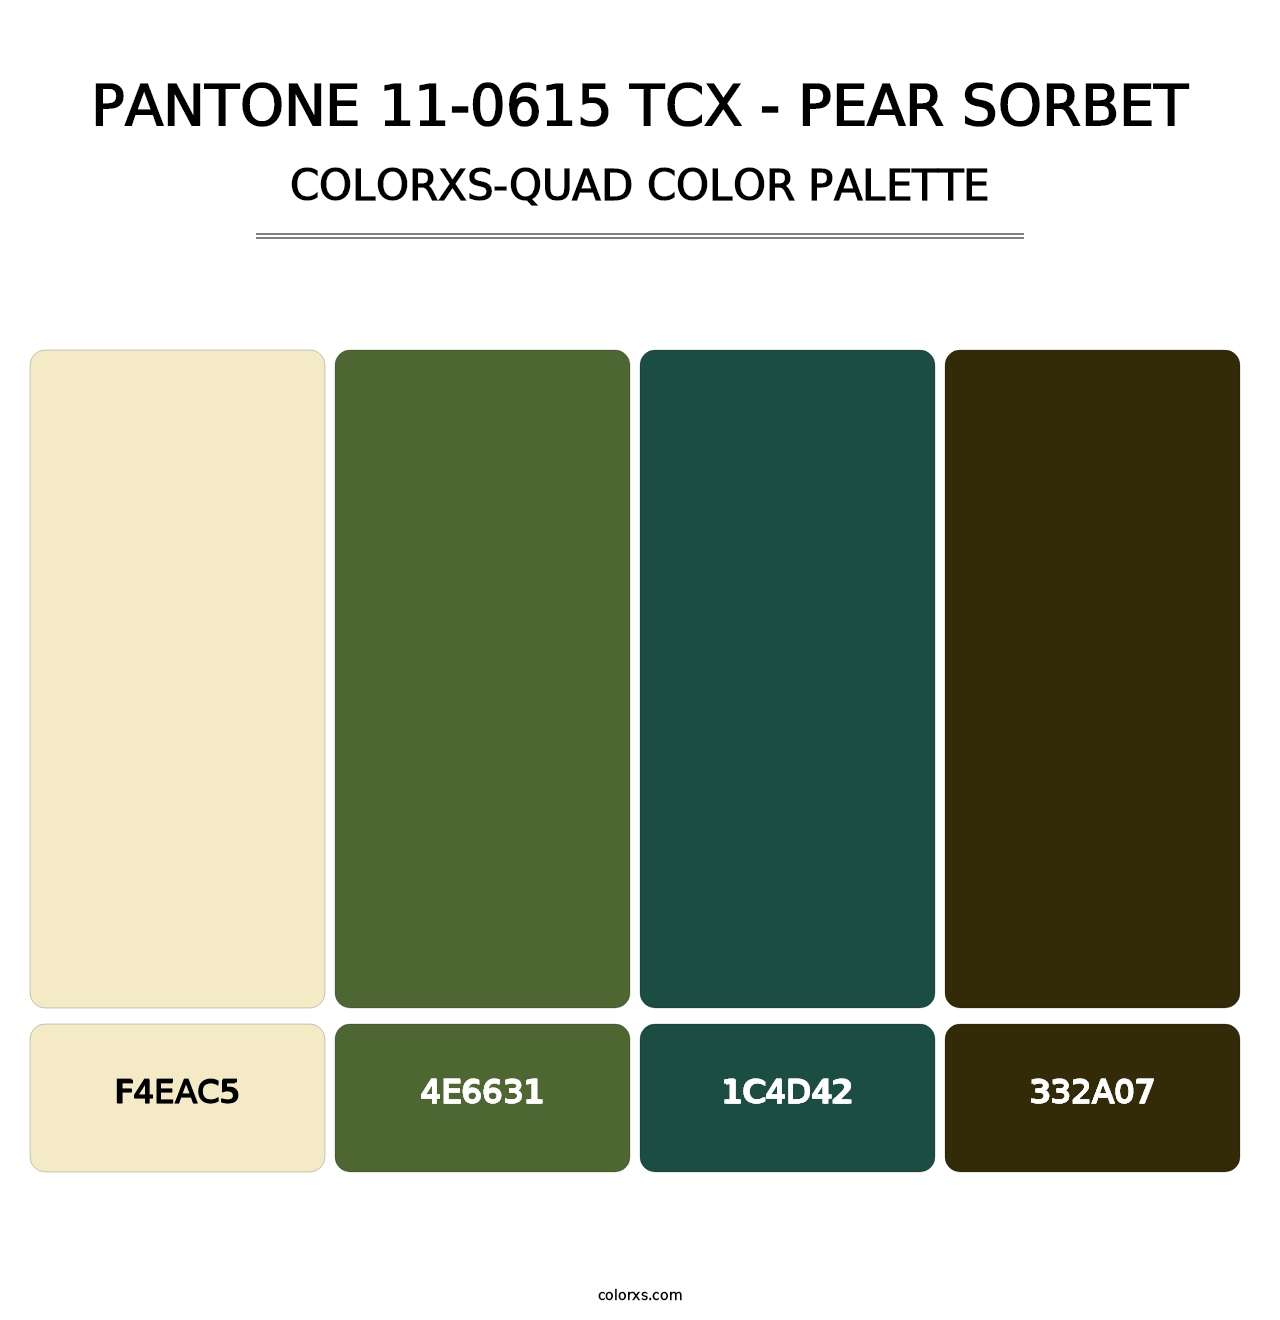 PANTONE 11-0615 TCX - Pear Sorbet - Colorxs Quad Palette